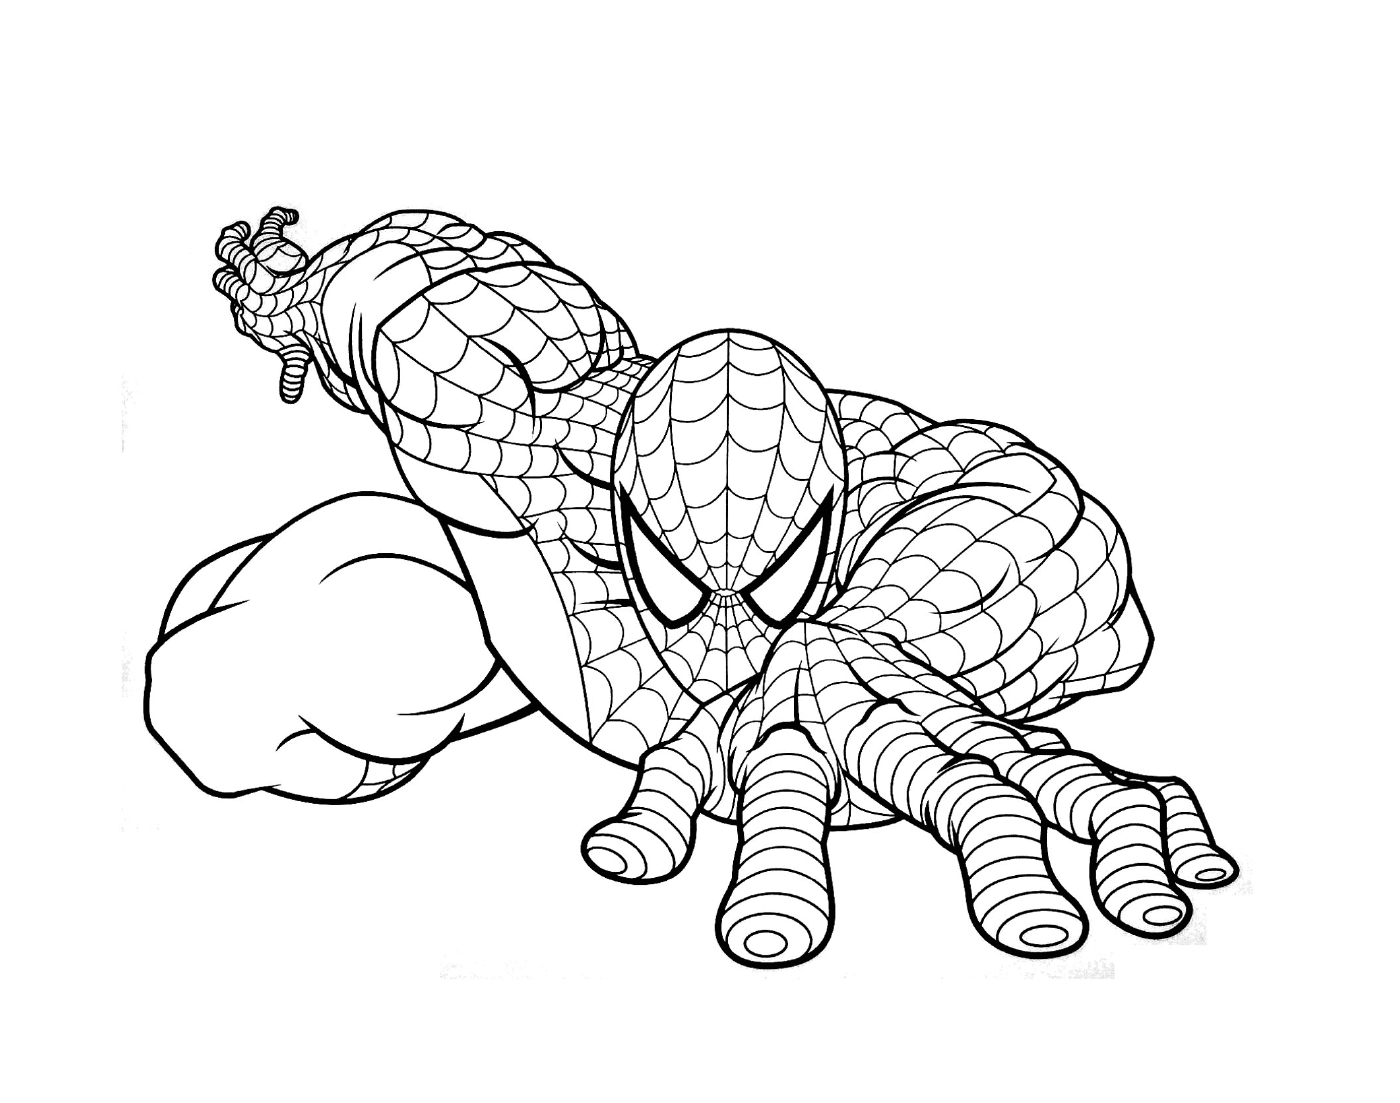  Spiderman vertreten in Zeichnung 